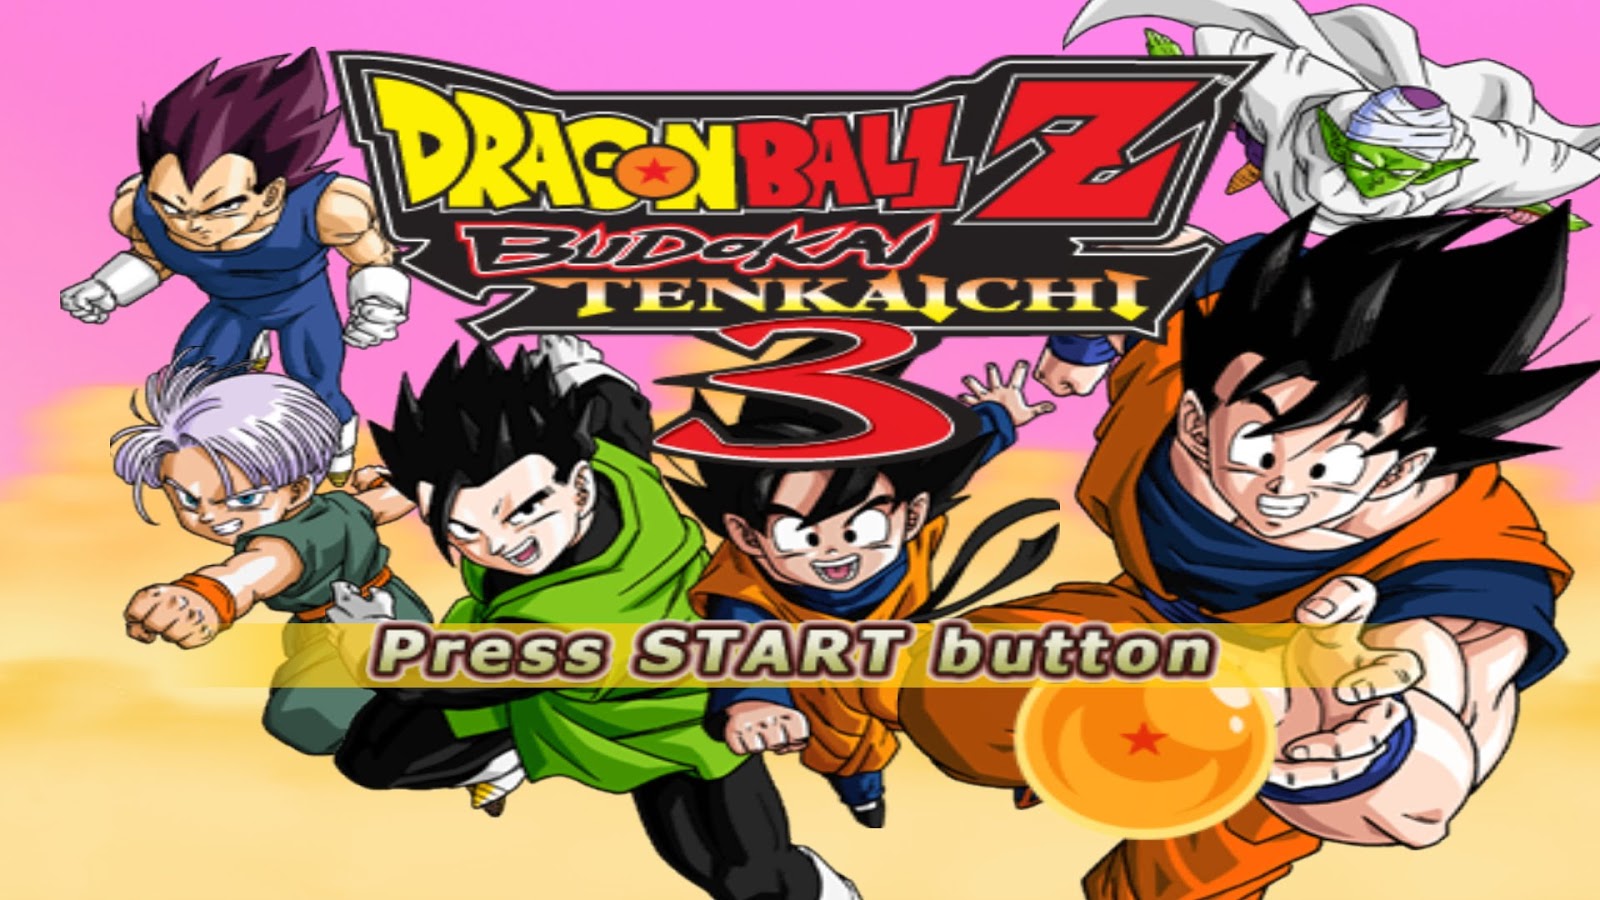 Dragon ball z budokai tenkaichi 3 savegame pcsx2 download